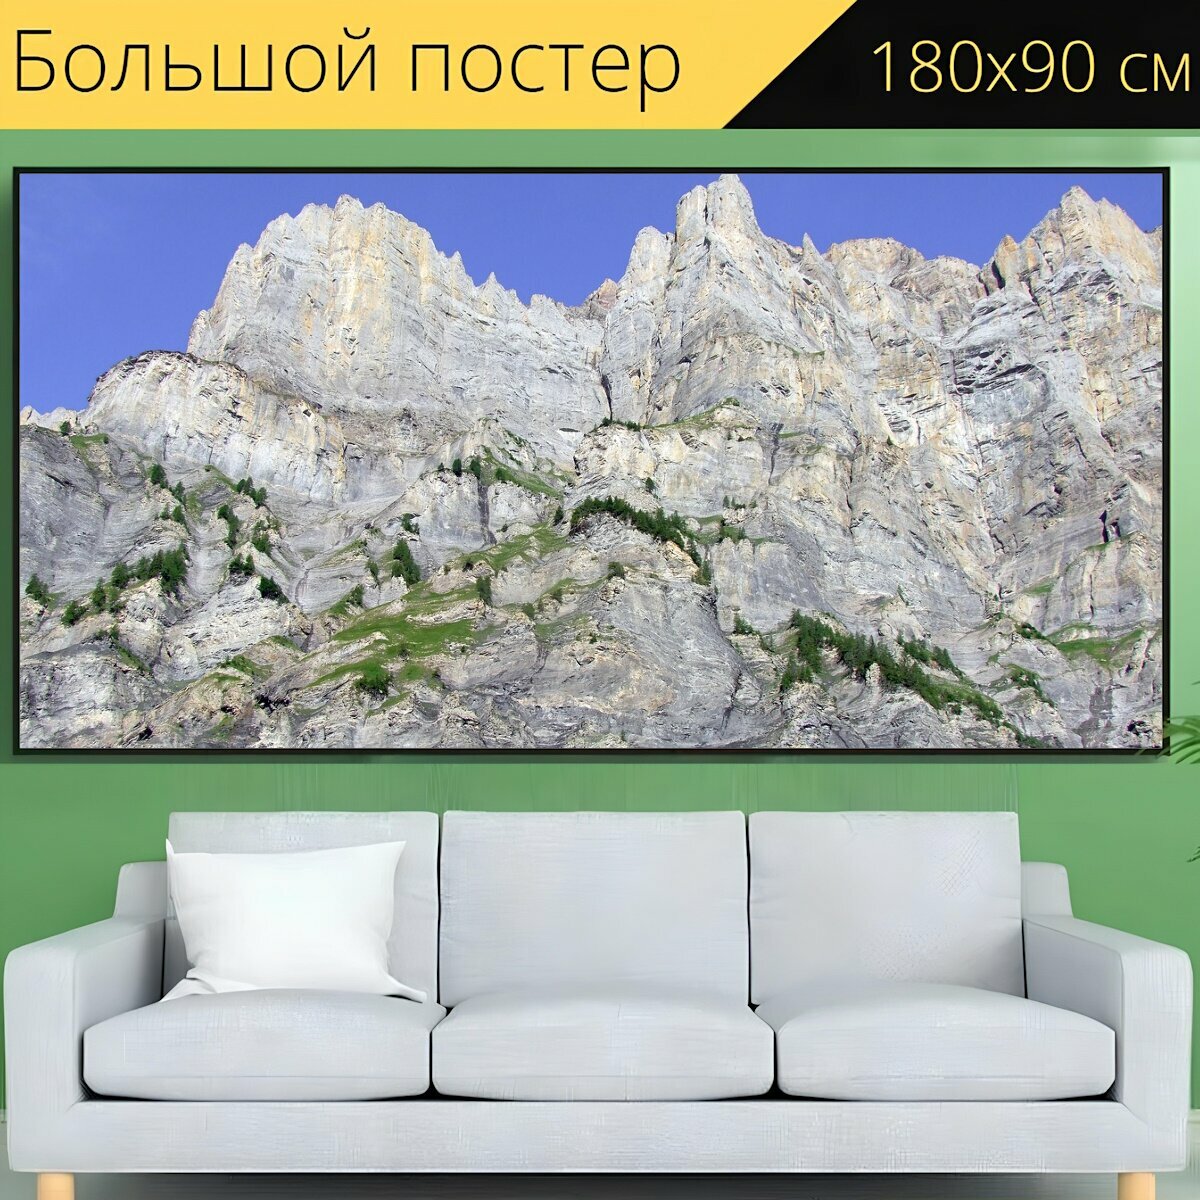 Большой постер "Скалы, альпинизм, альпы" 180 x 90 см. для интерьера